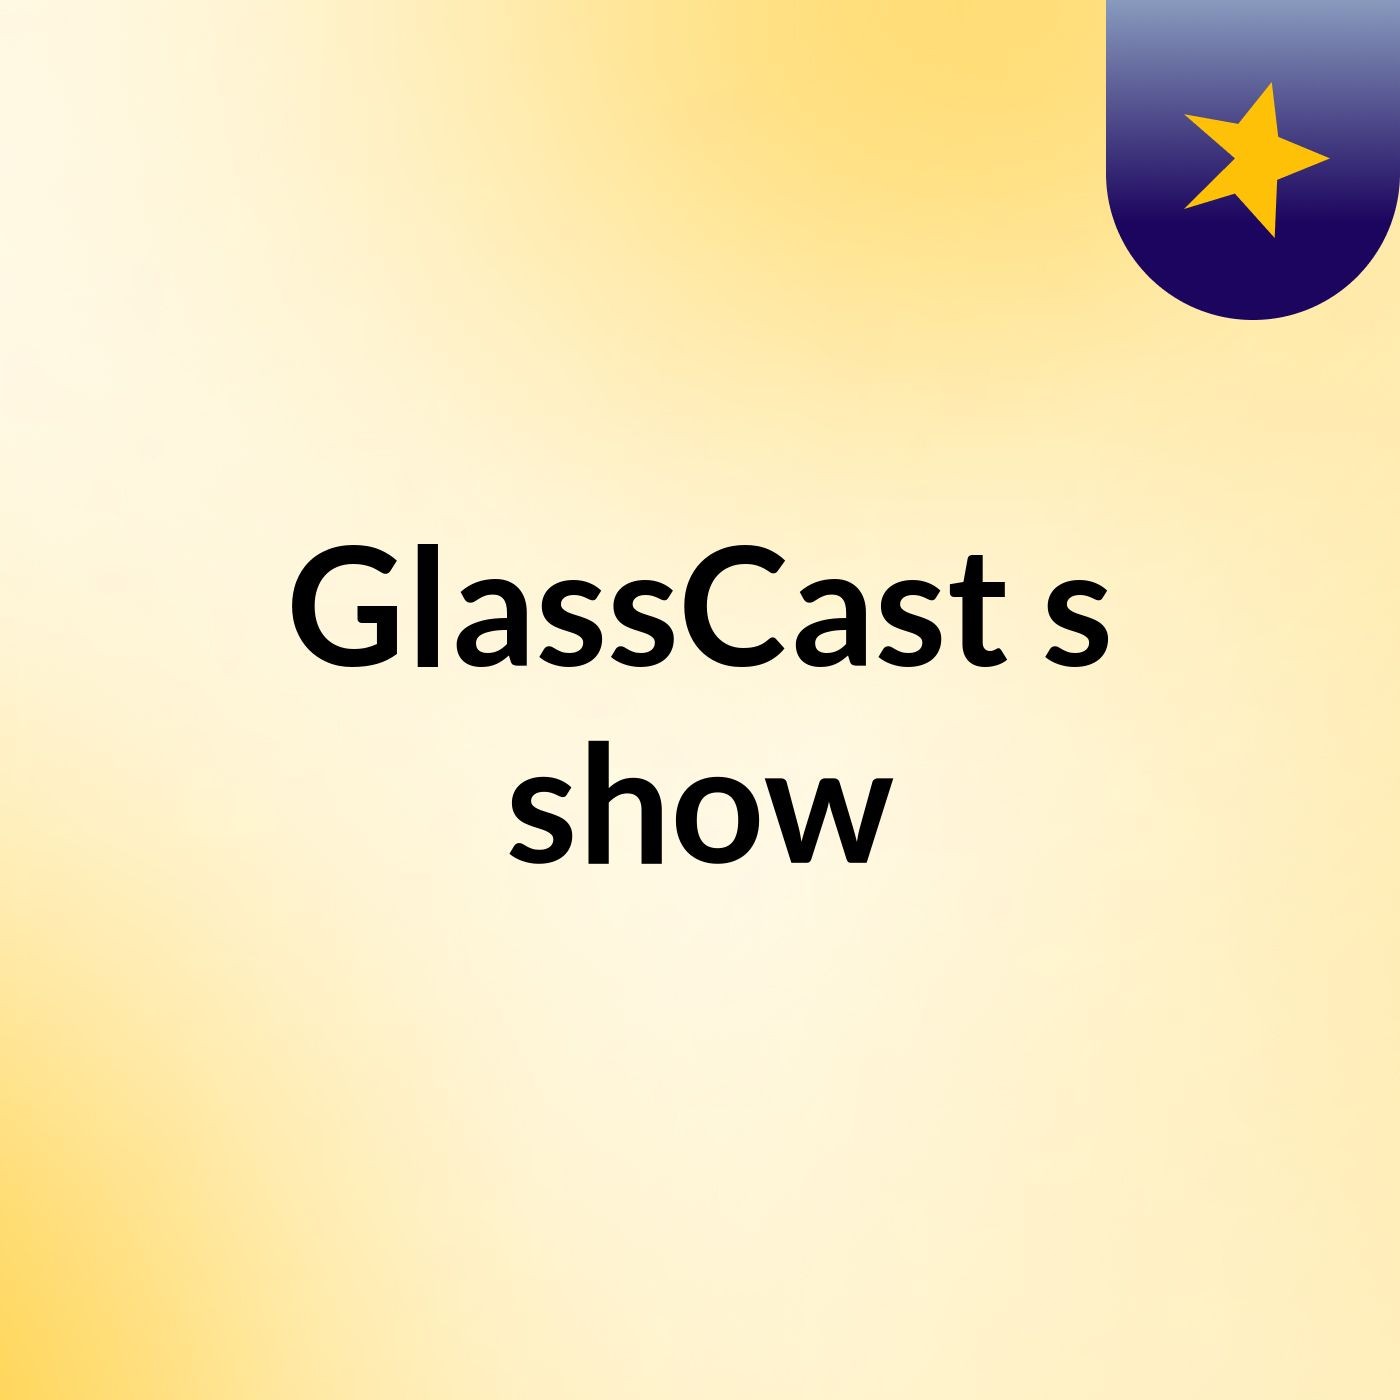 GlassCast's show